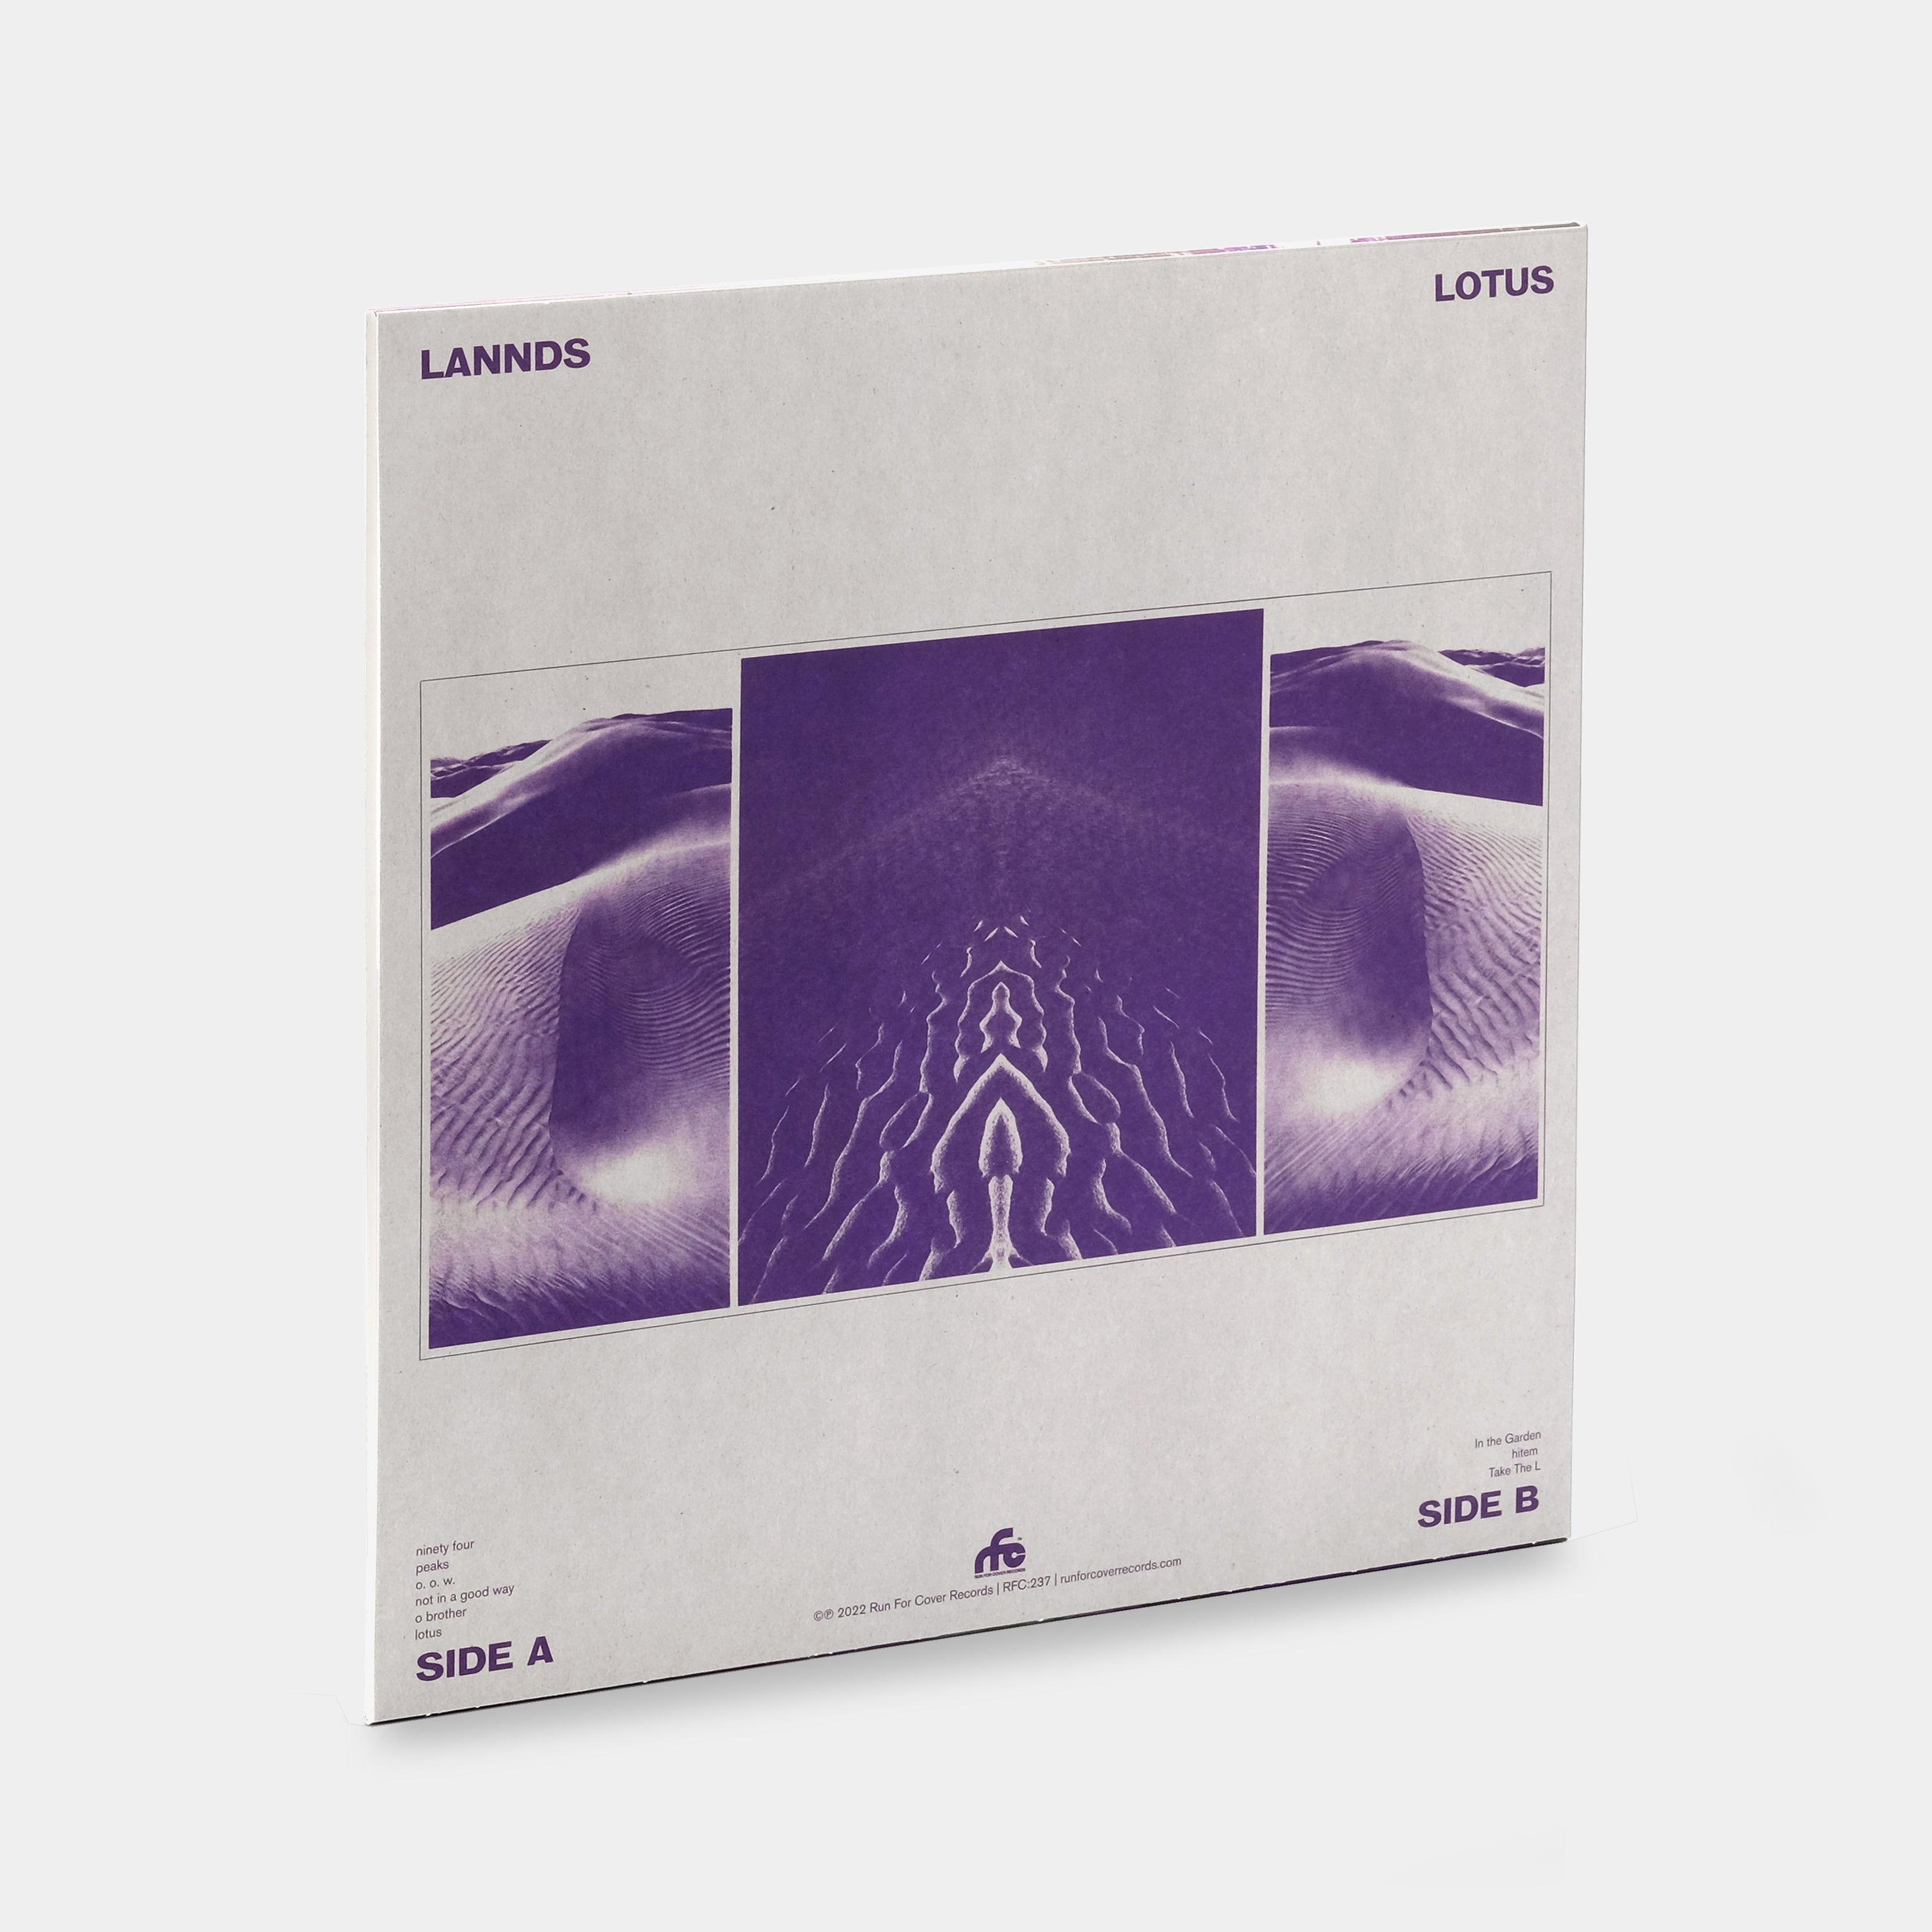 LAANDS - lotus deluxe LP Pink Vinyl Record